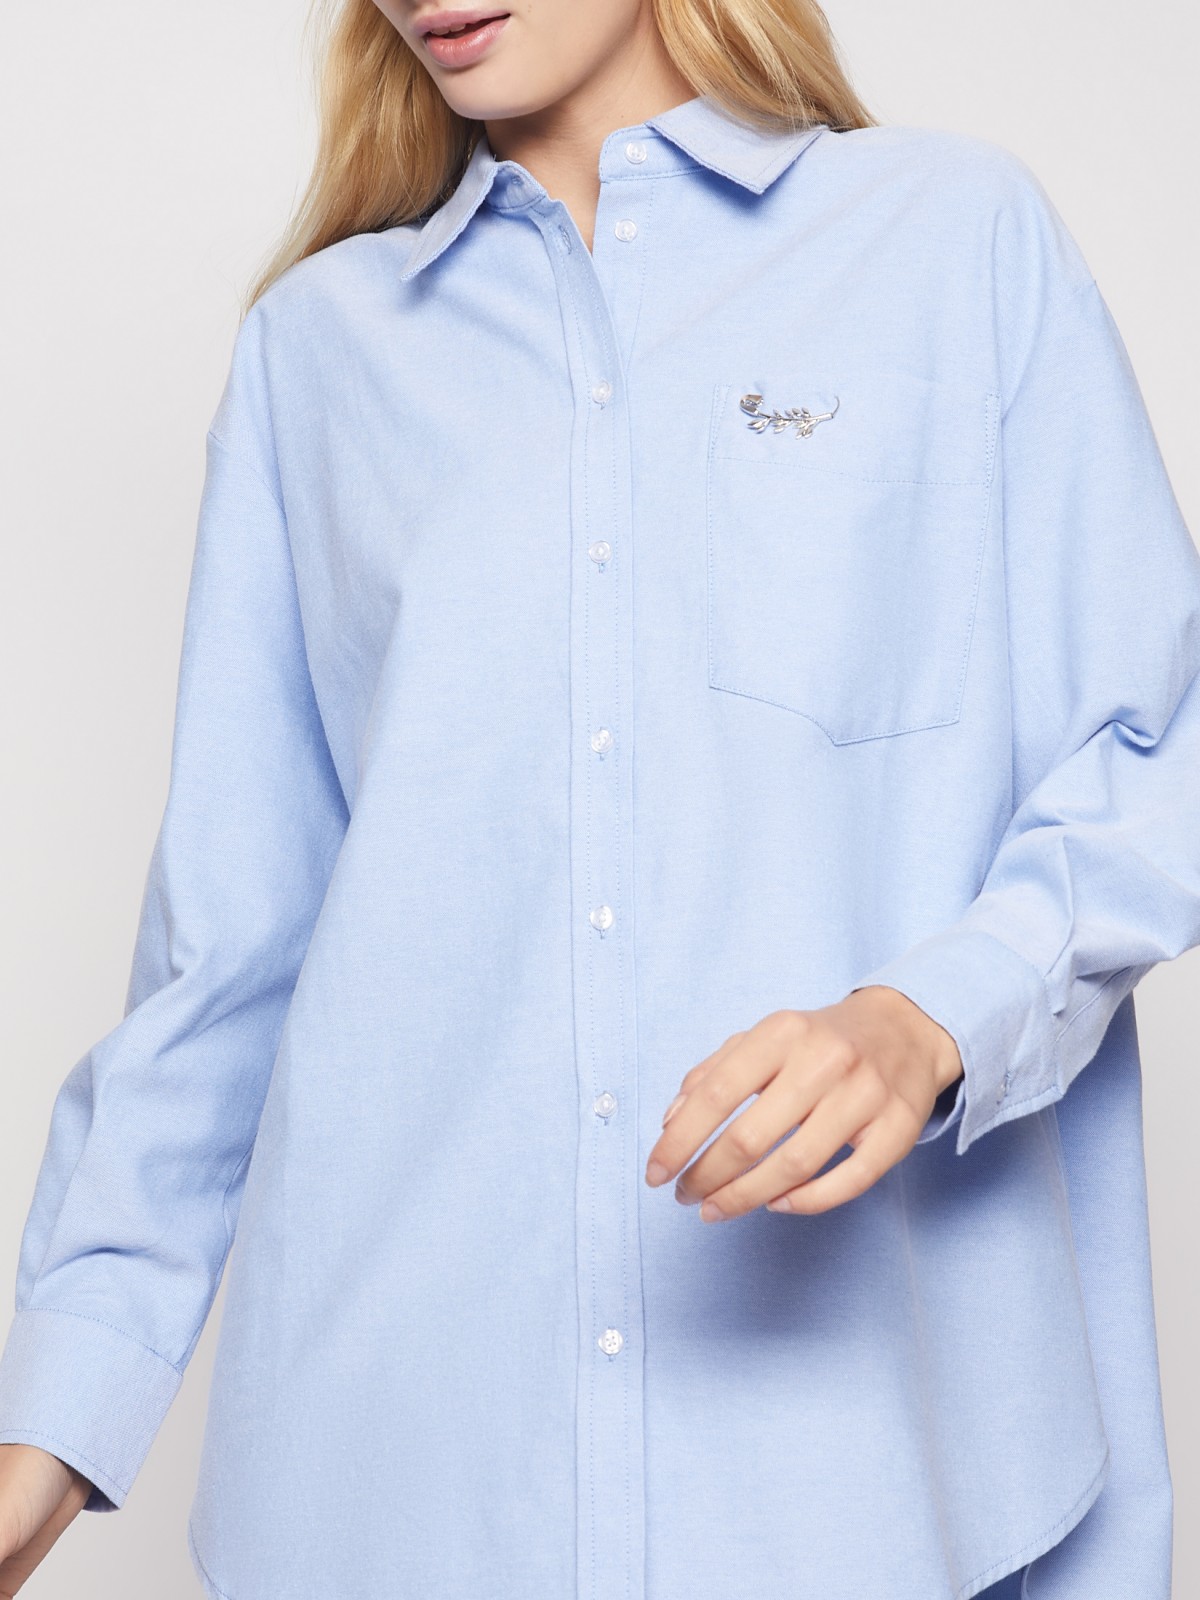 Хлопковая рубашка с брошью zolla 02143114Y011, цвет светло-голубой, размер XS - фото 3